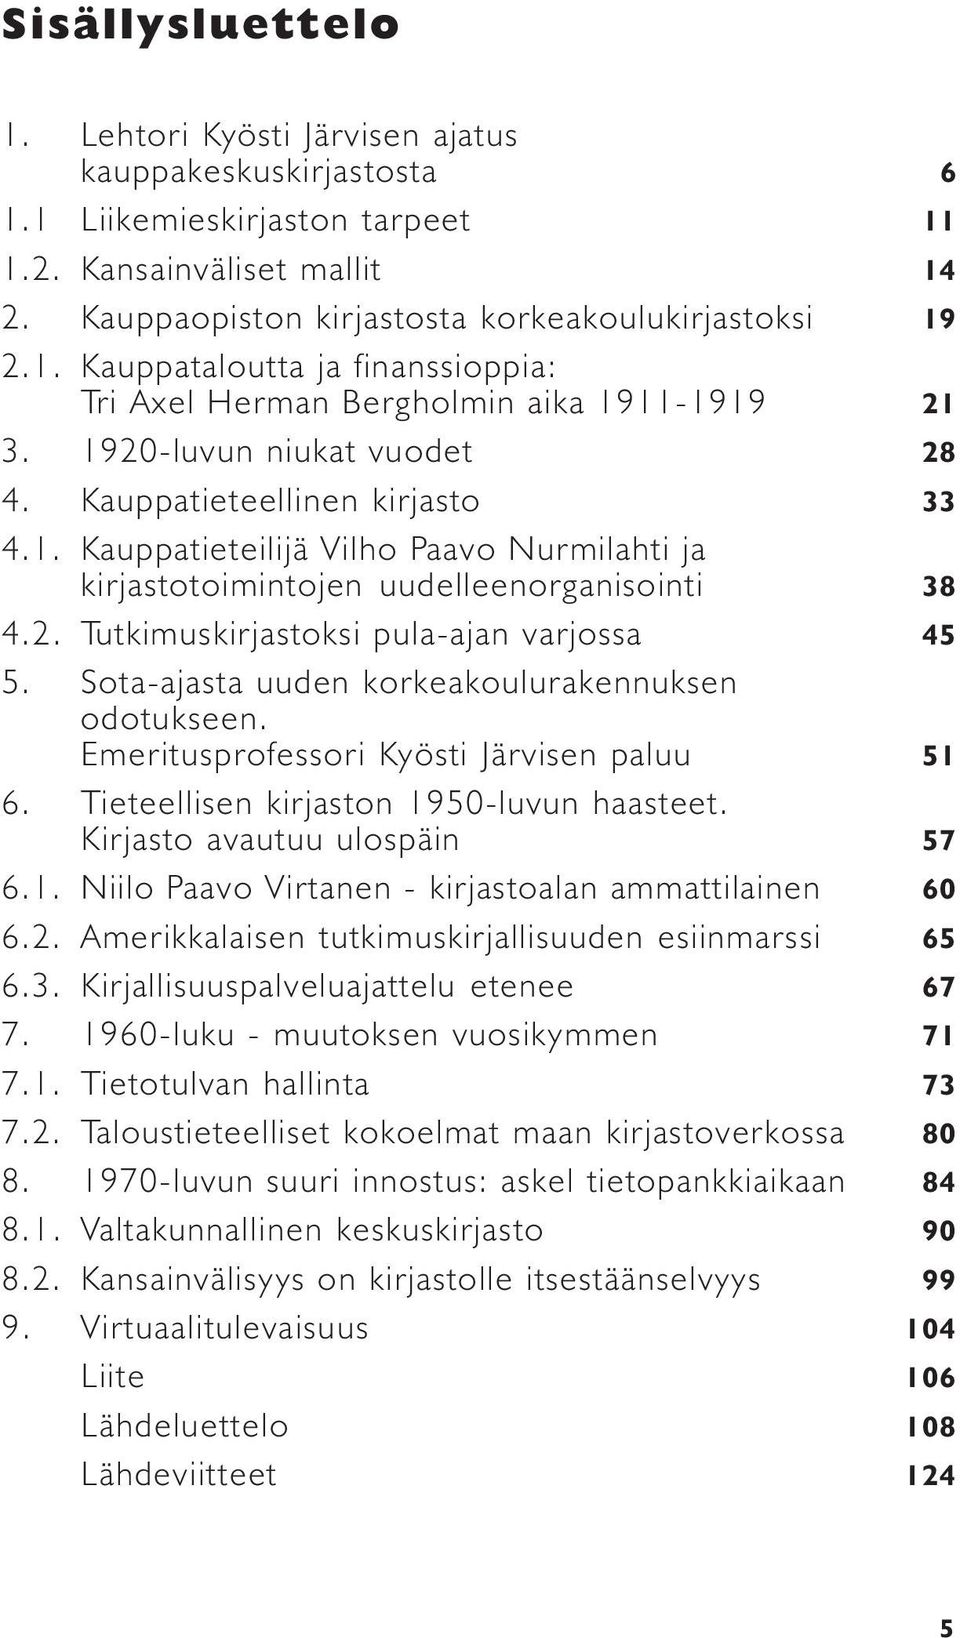 Sota-ajasta uuden korkeakoulurakennuksen odotukseen. Emeritusprofessori Kyösti Järvisen paluu 51 6. Tieteellisen kirjaston 1950-luvun haasteet. Kirjasto avautuu ulospäin 57 6.1. Niilo Paavo Virtanen - kirjastoalan ammattilainen 60 6.